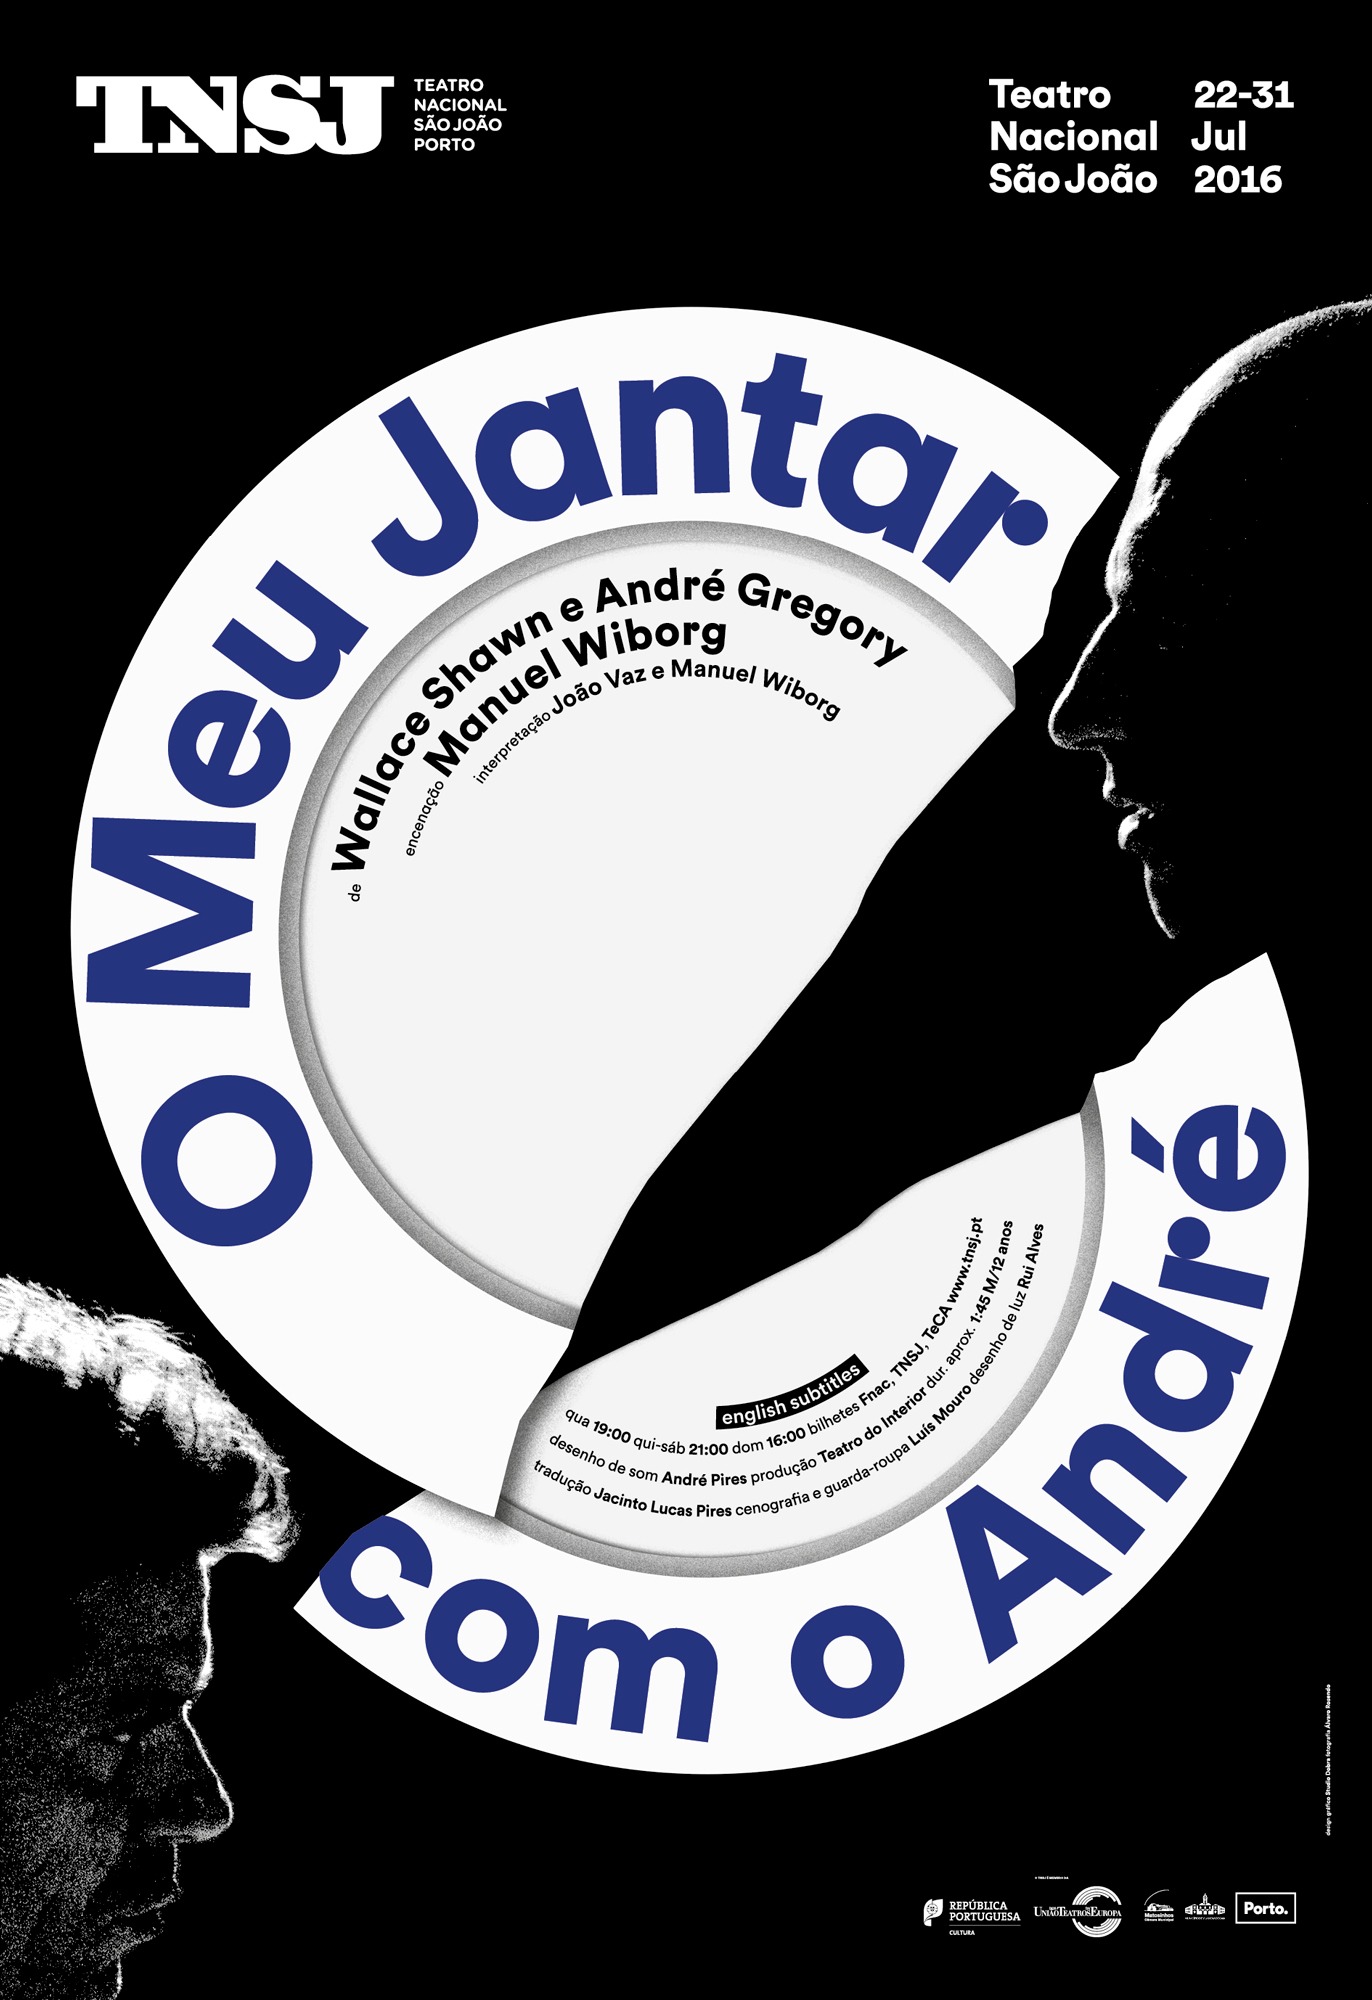 São João National Theatre Posters 2017-2018 Image:10.6